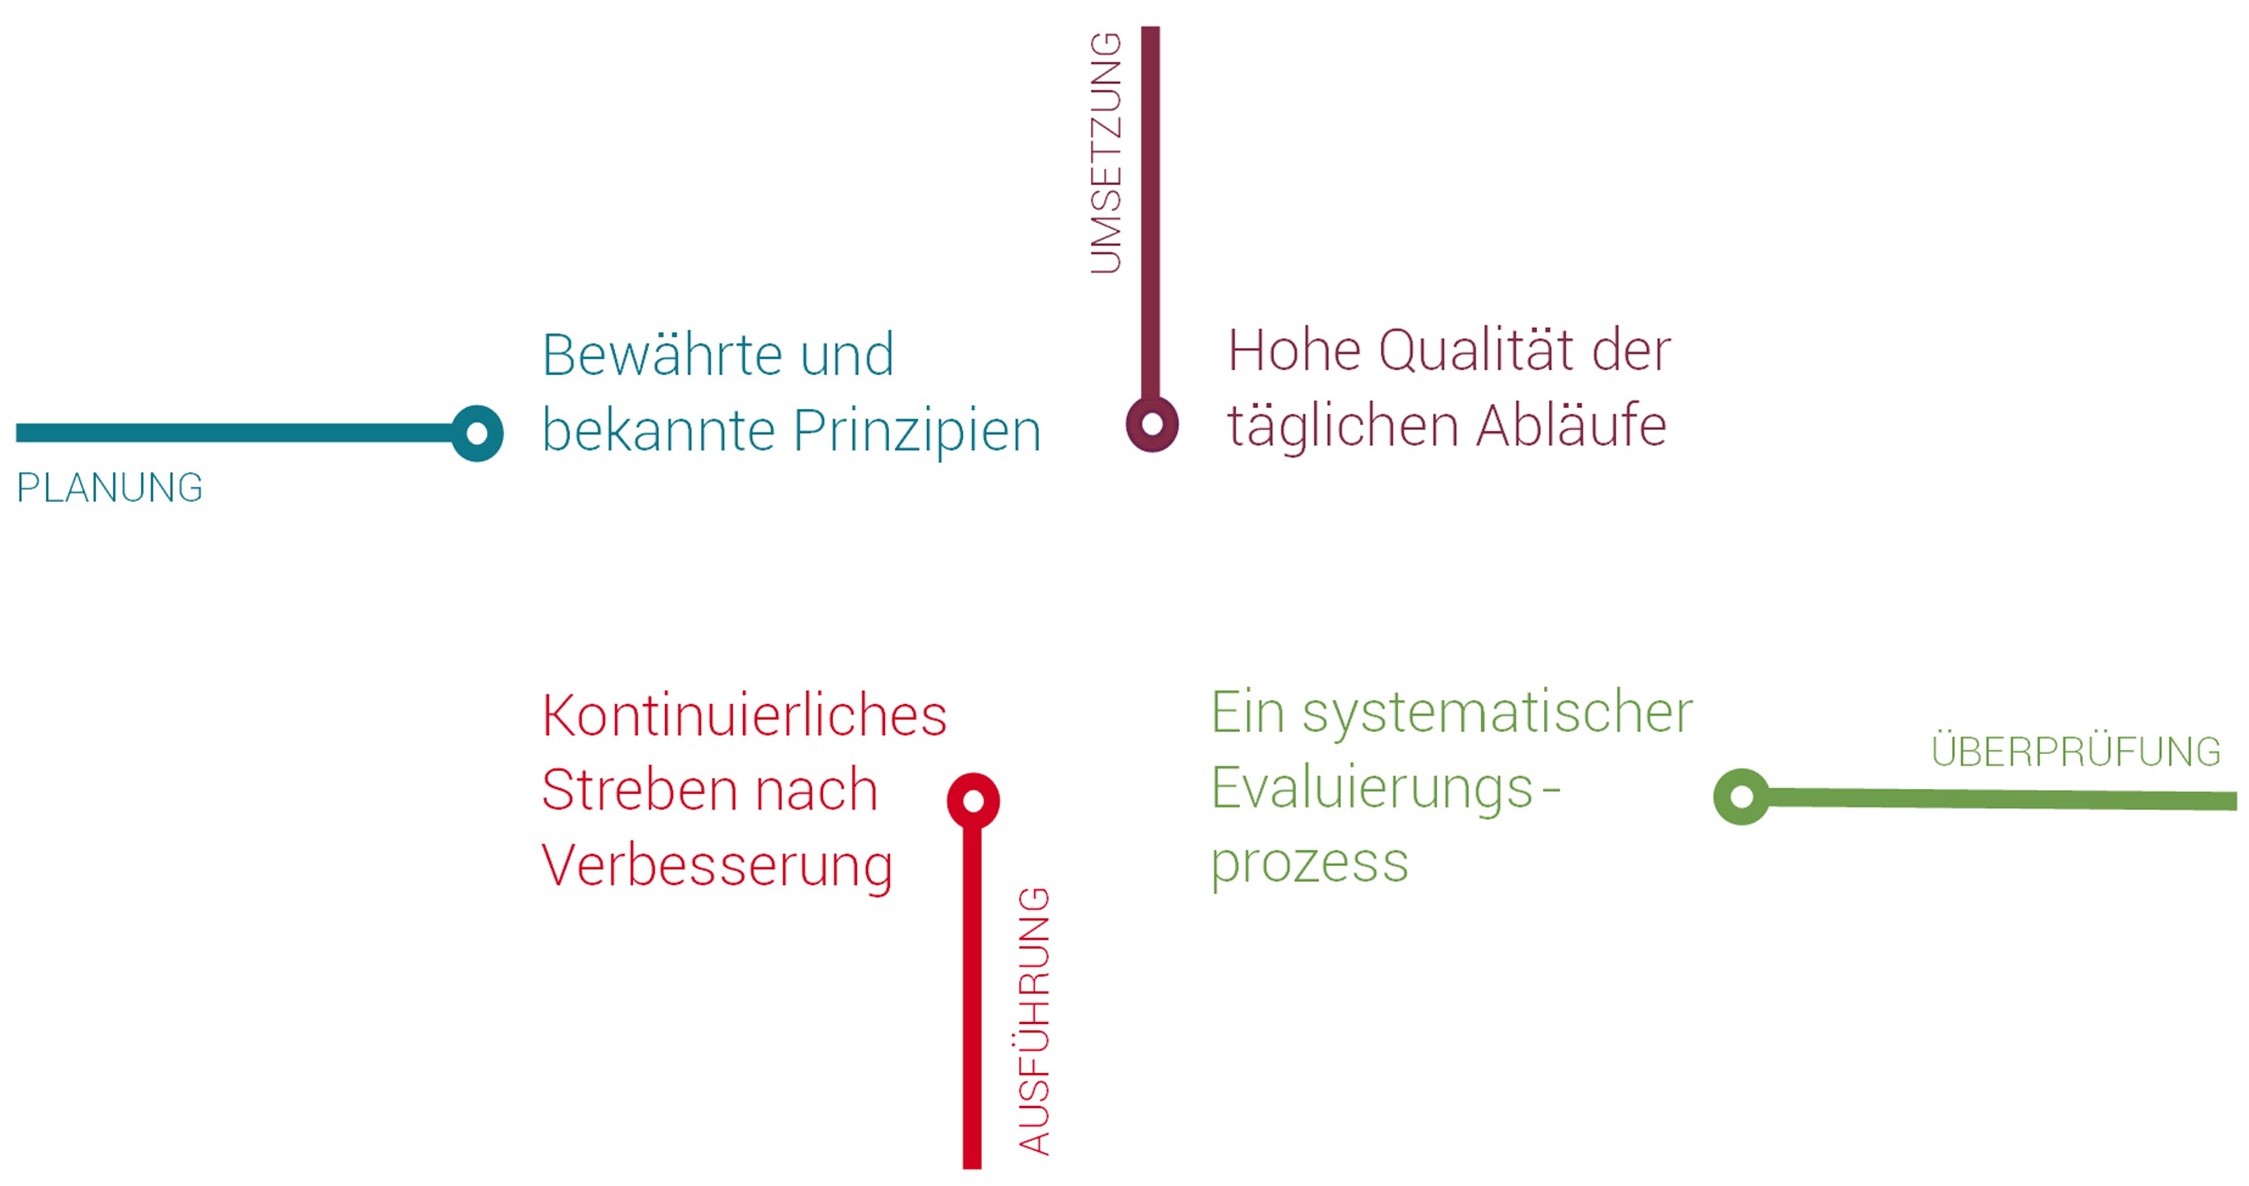 Ecole Suisse Internationale : Unser Qualitätsversprechen